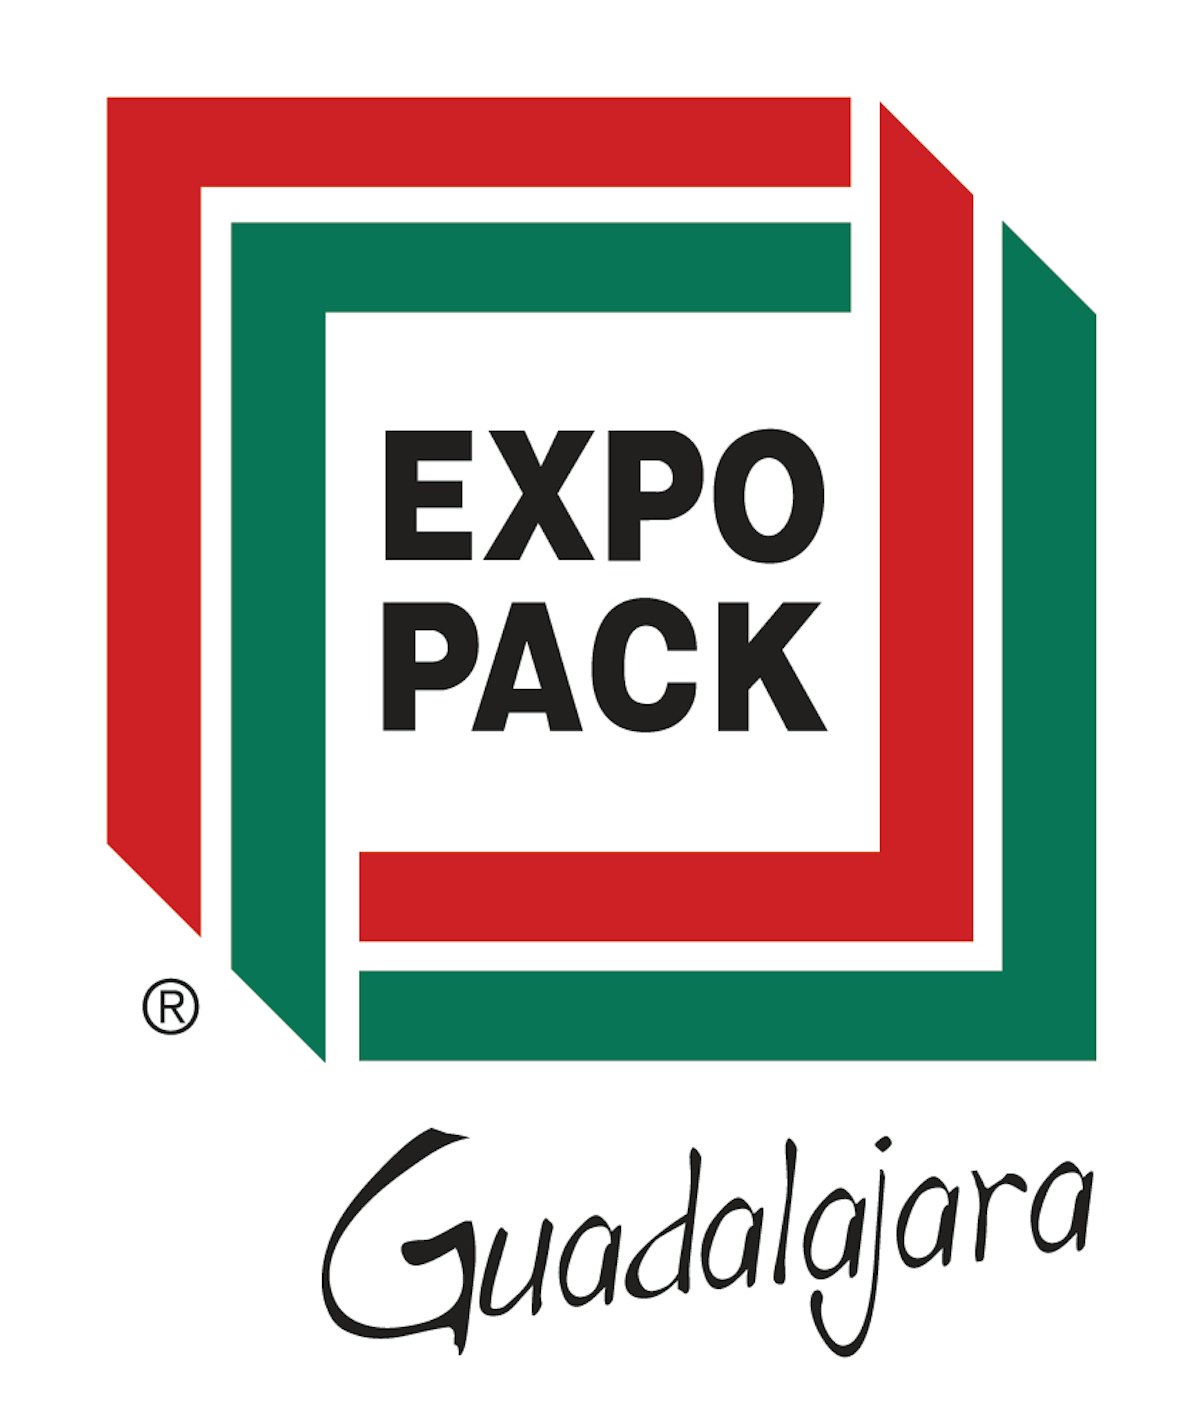 EXPO PACK Guadalajara ทำลายสถิติ